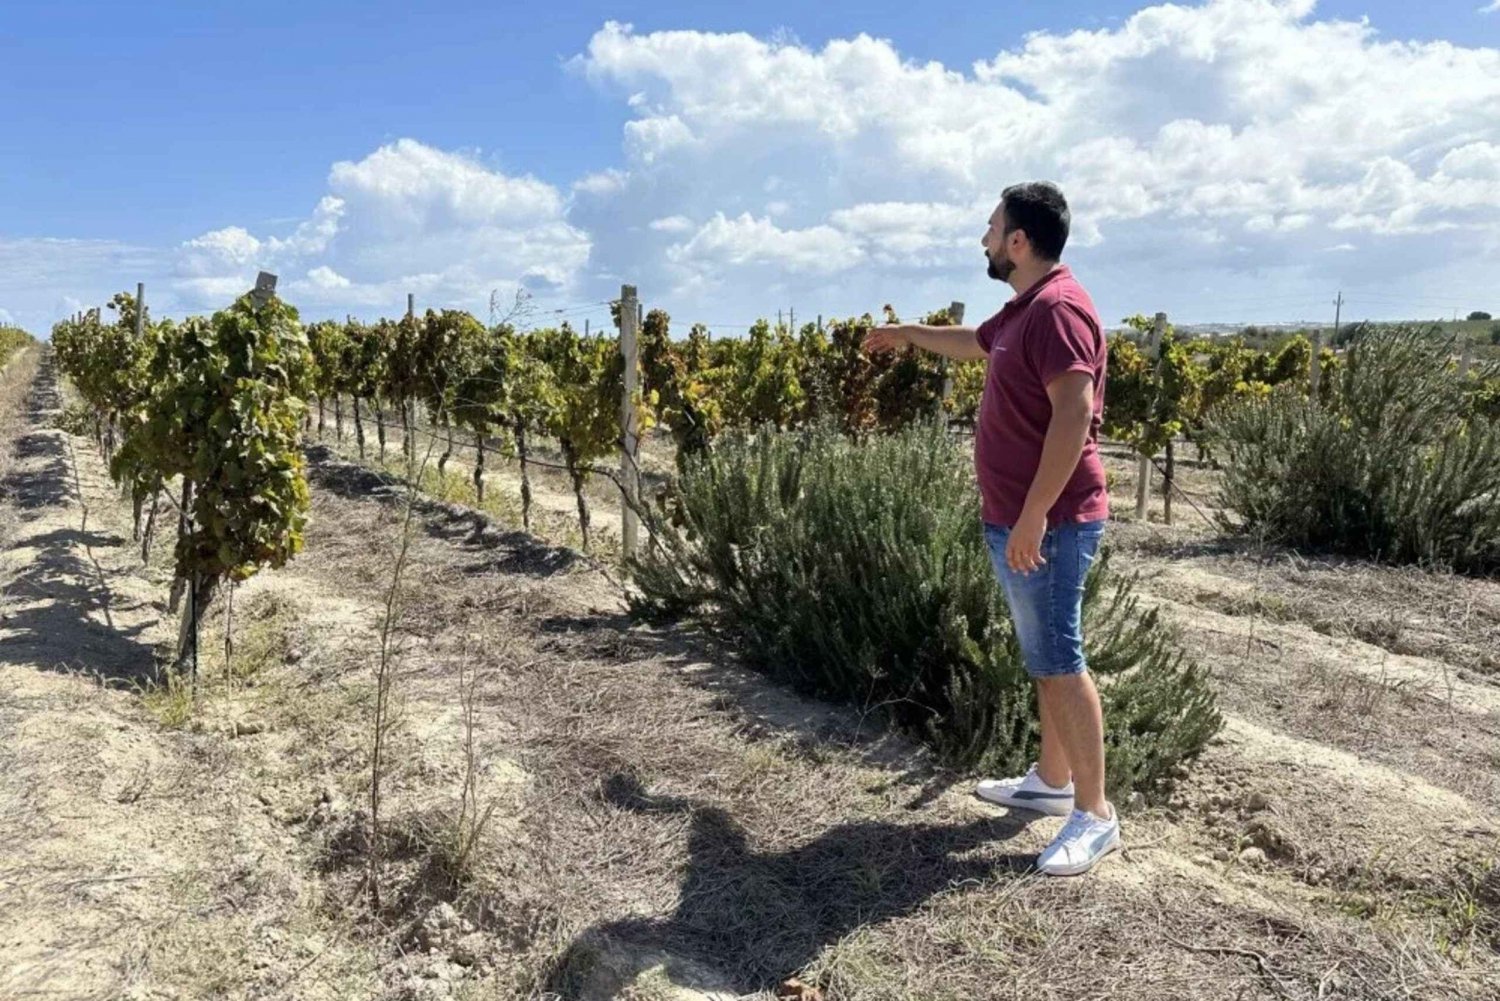 Noto: Vinsmagning og rundtur på vingård med lokale produkter